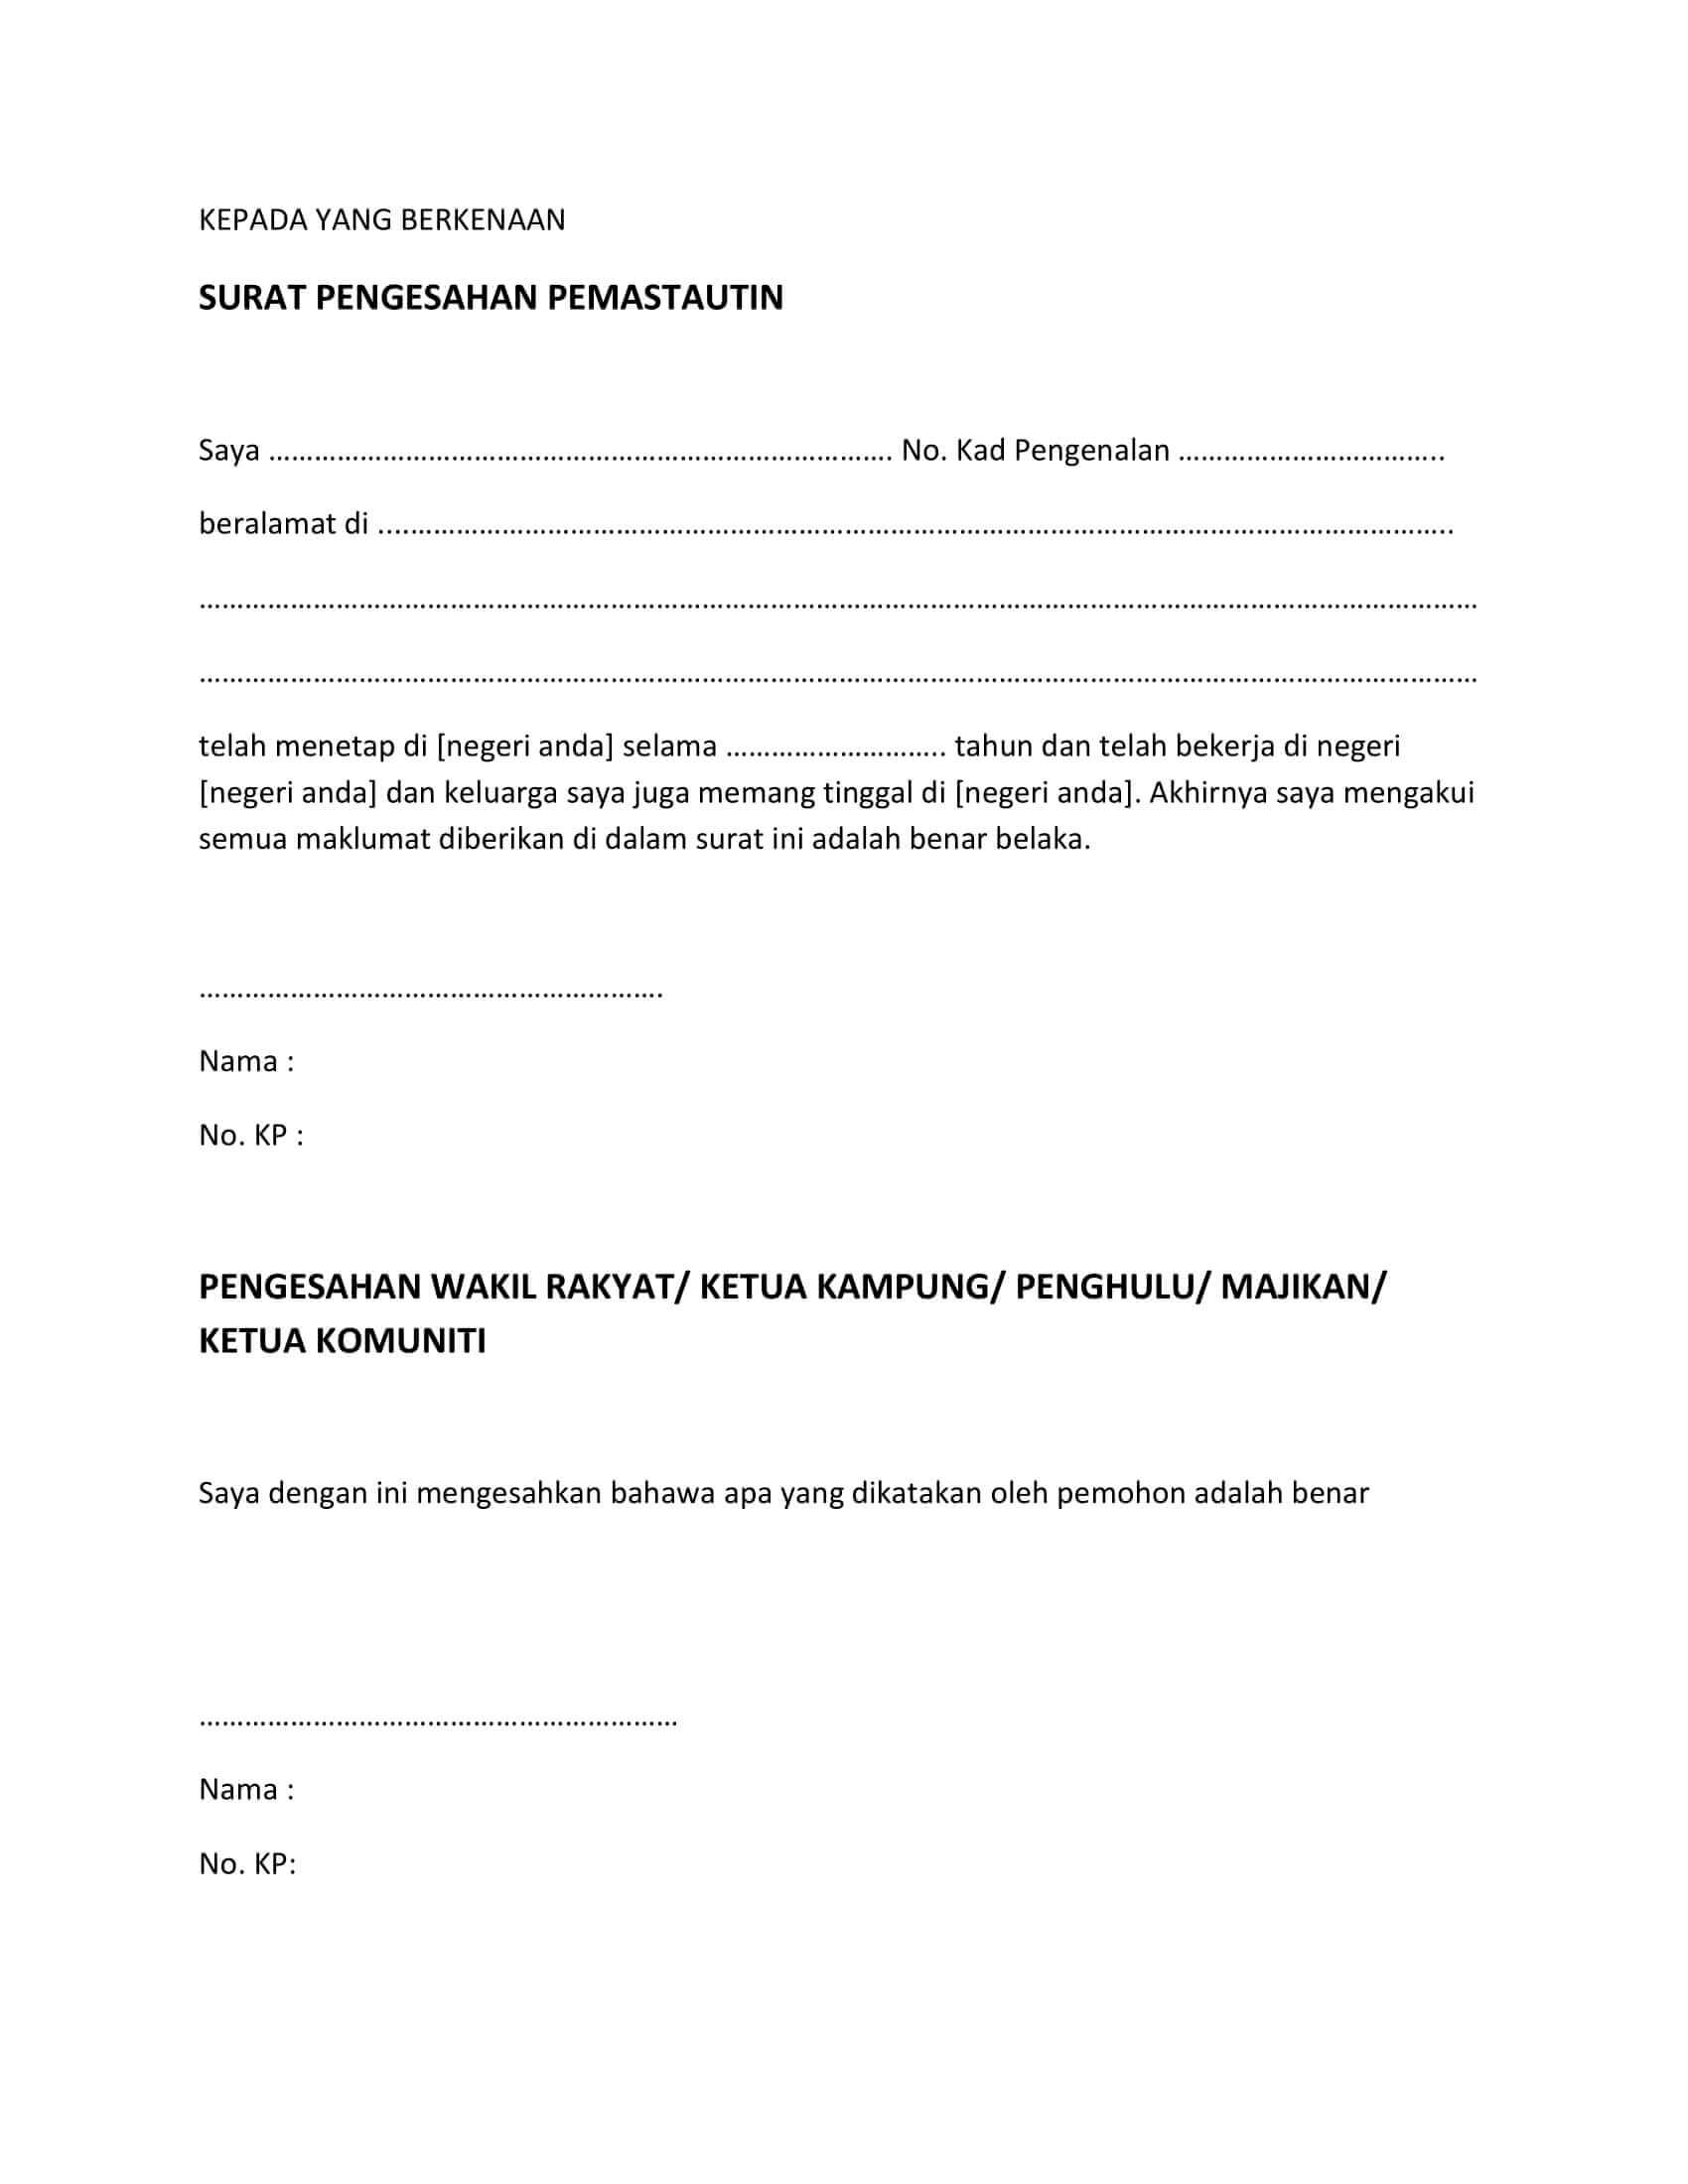 Contoh Surat Pengesahan Mastautin Negeri Johor